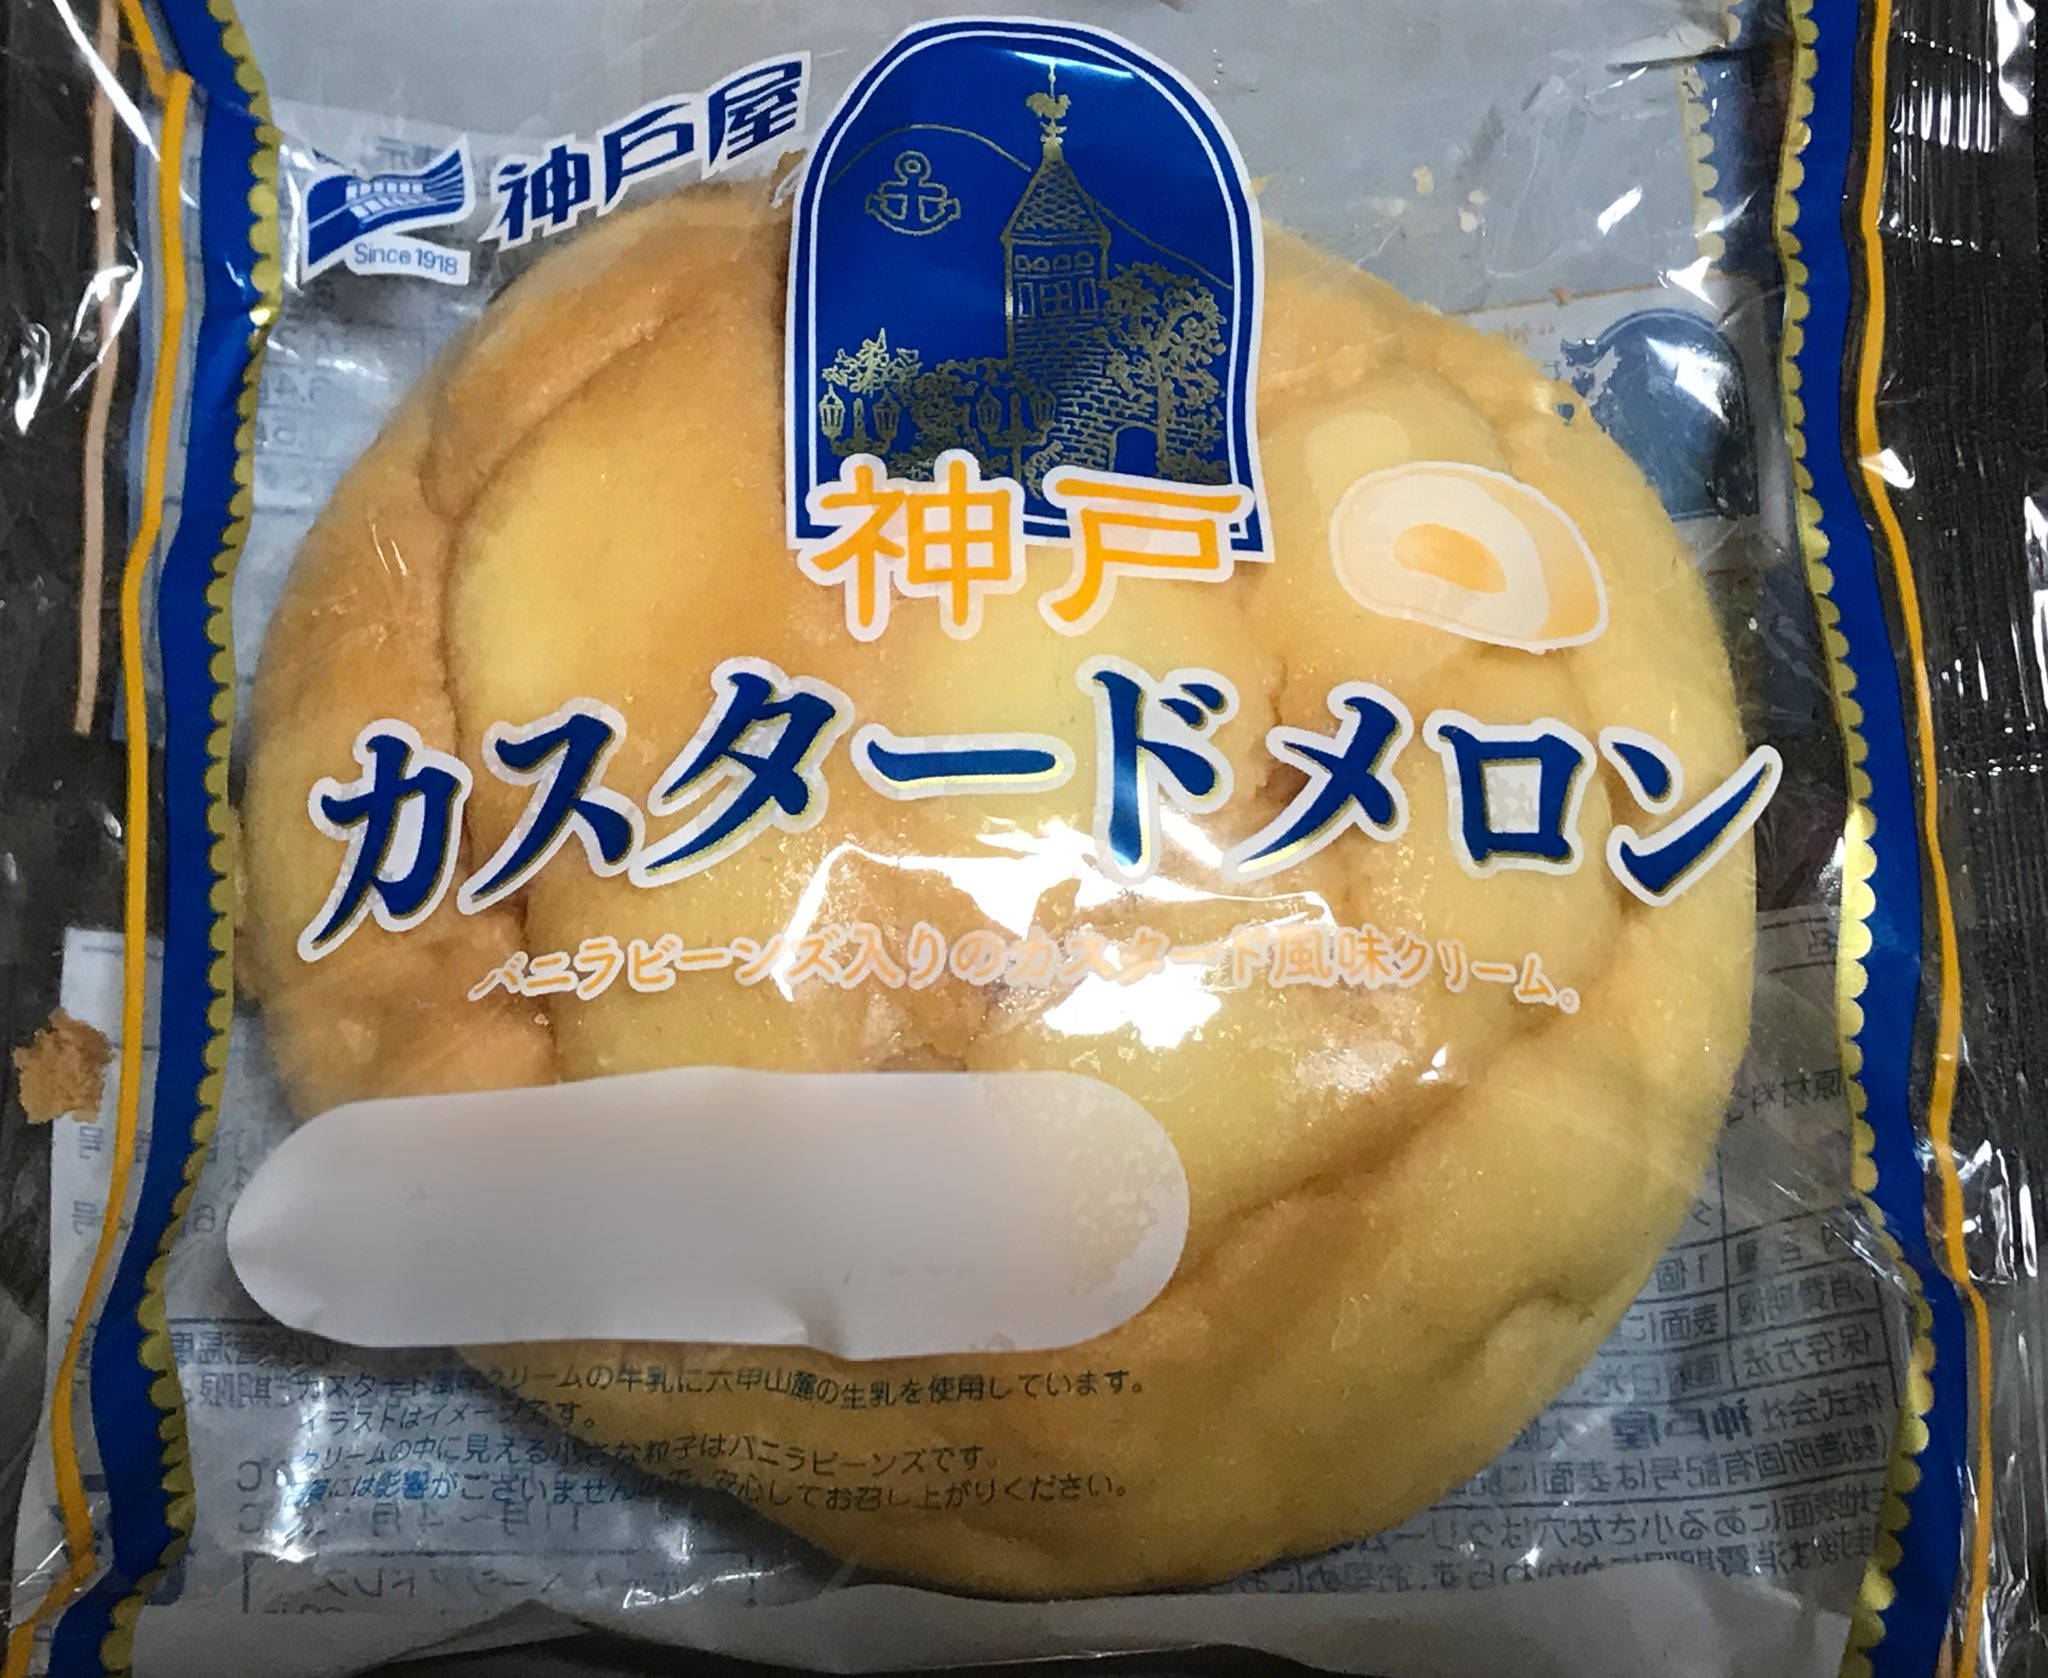 O Xrhsths やし子 Sto Twitter なんで神戸 神戸屋やから 美味しいからええけどな 神戸カスタードメロン 神戸屋 カスタード メロンパン 神戸 パン大好き パンマニア パン 菓子パン 美味しい オススメ デブのもと T Co R9umwdkjz0 Twitter